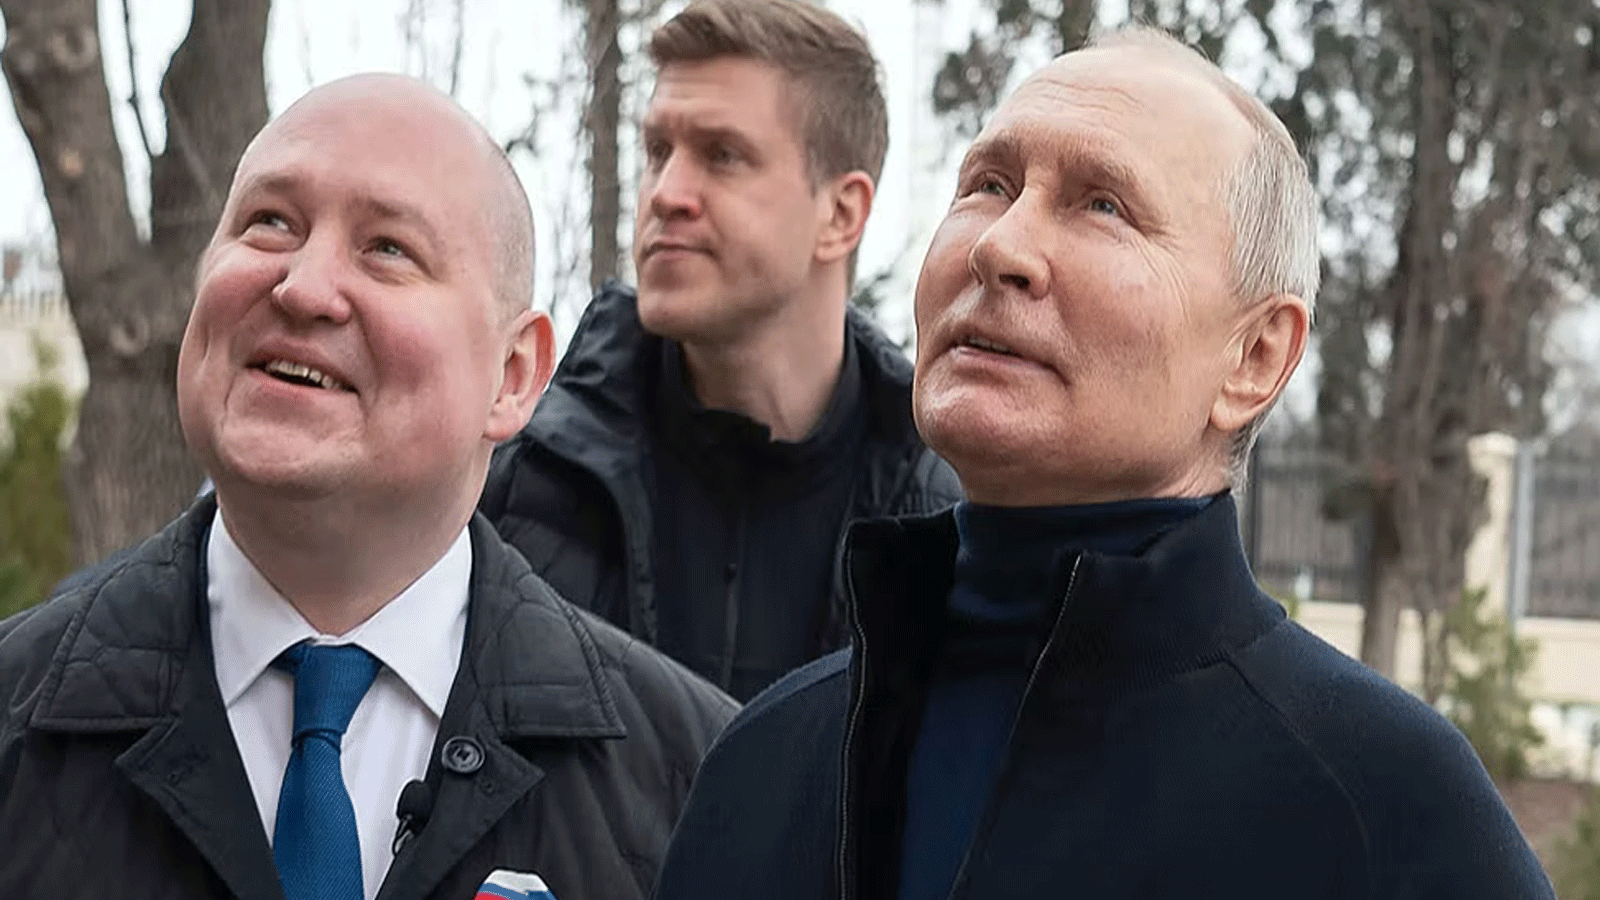 بوتين (يمين) مع الحاكم ميخائيل رازفوزاييف في حديقة تشيرسونيسوس توريكا التاريخية والأثرية في سيفاستوبول(المكتب الصحفي الرئاسي الروسي)